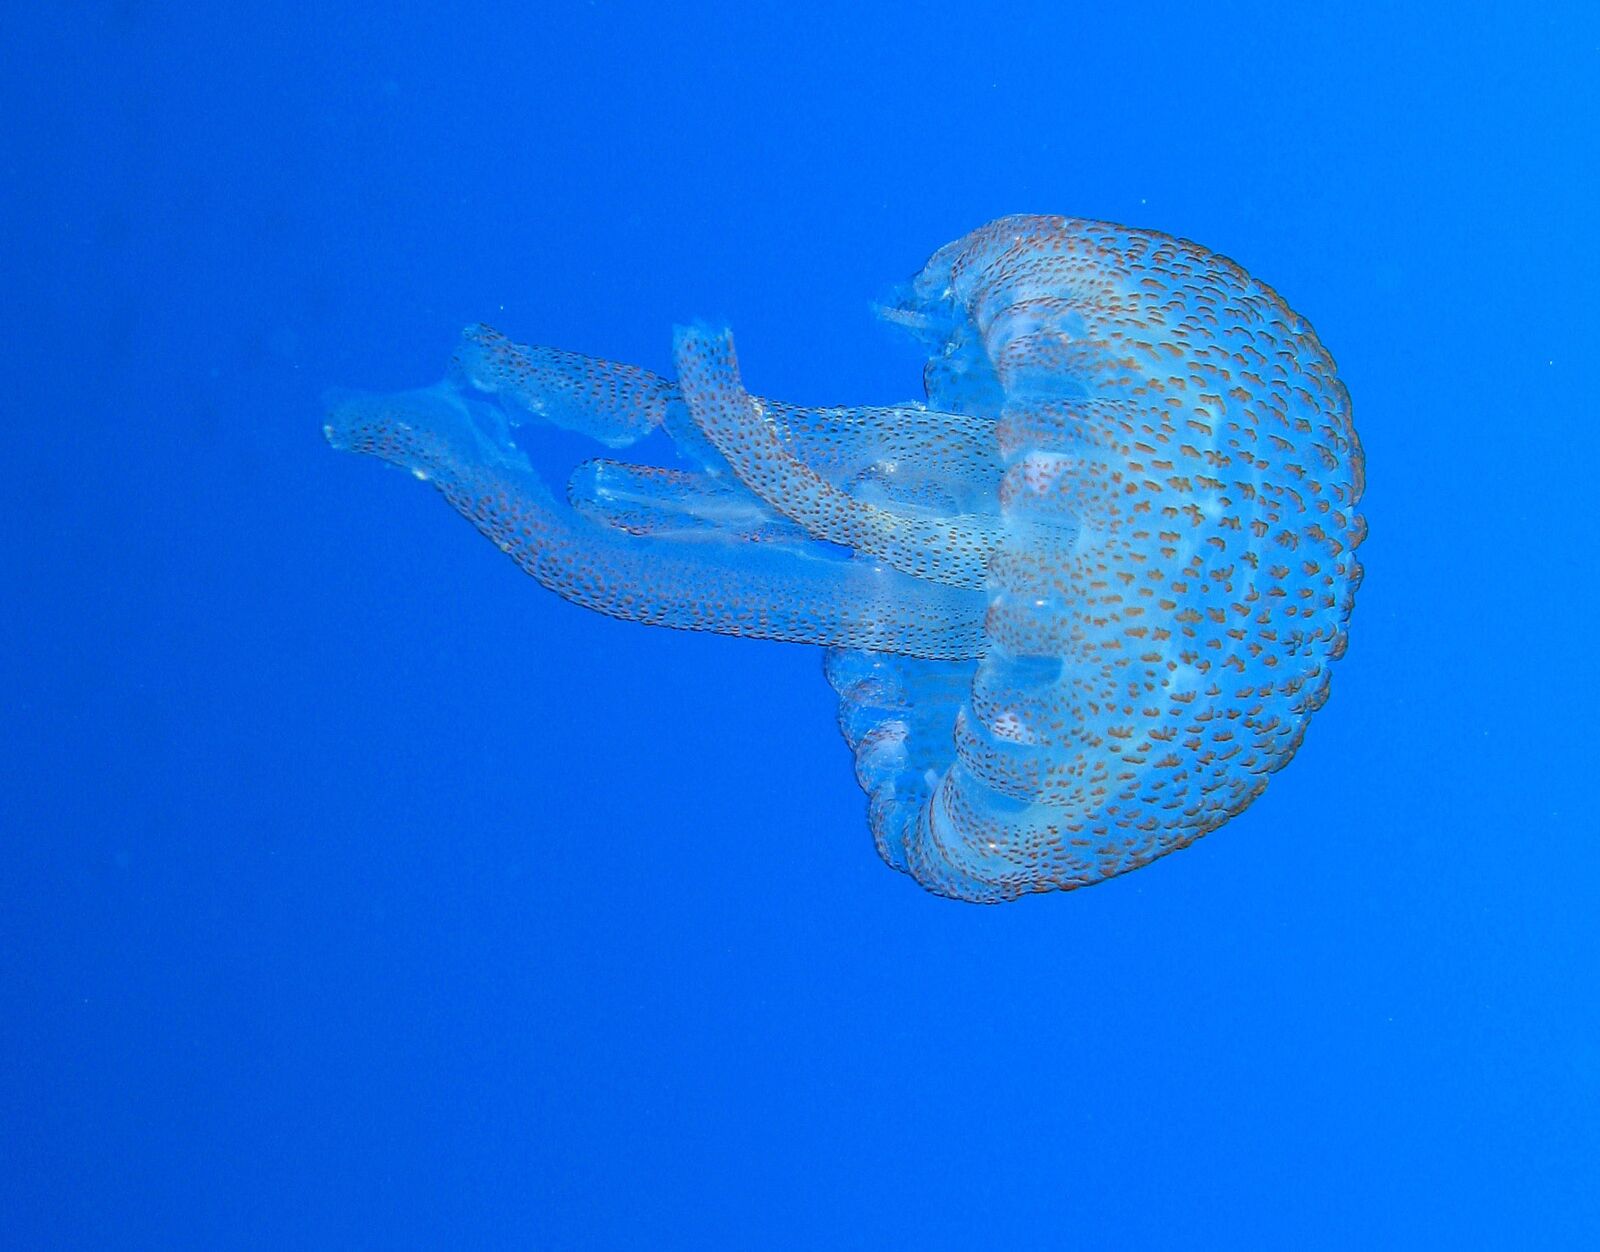 Canon POWERSHOT G9 sample photo. Jellyfish, sea, underwater photography